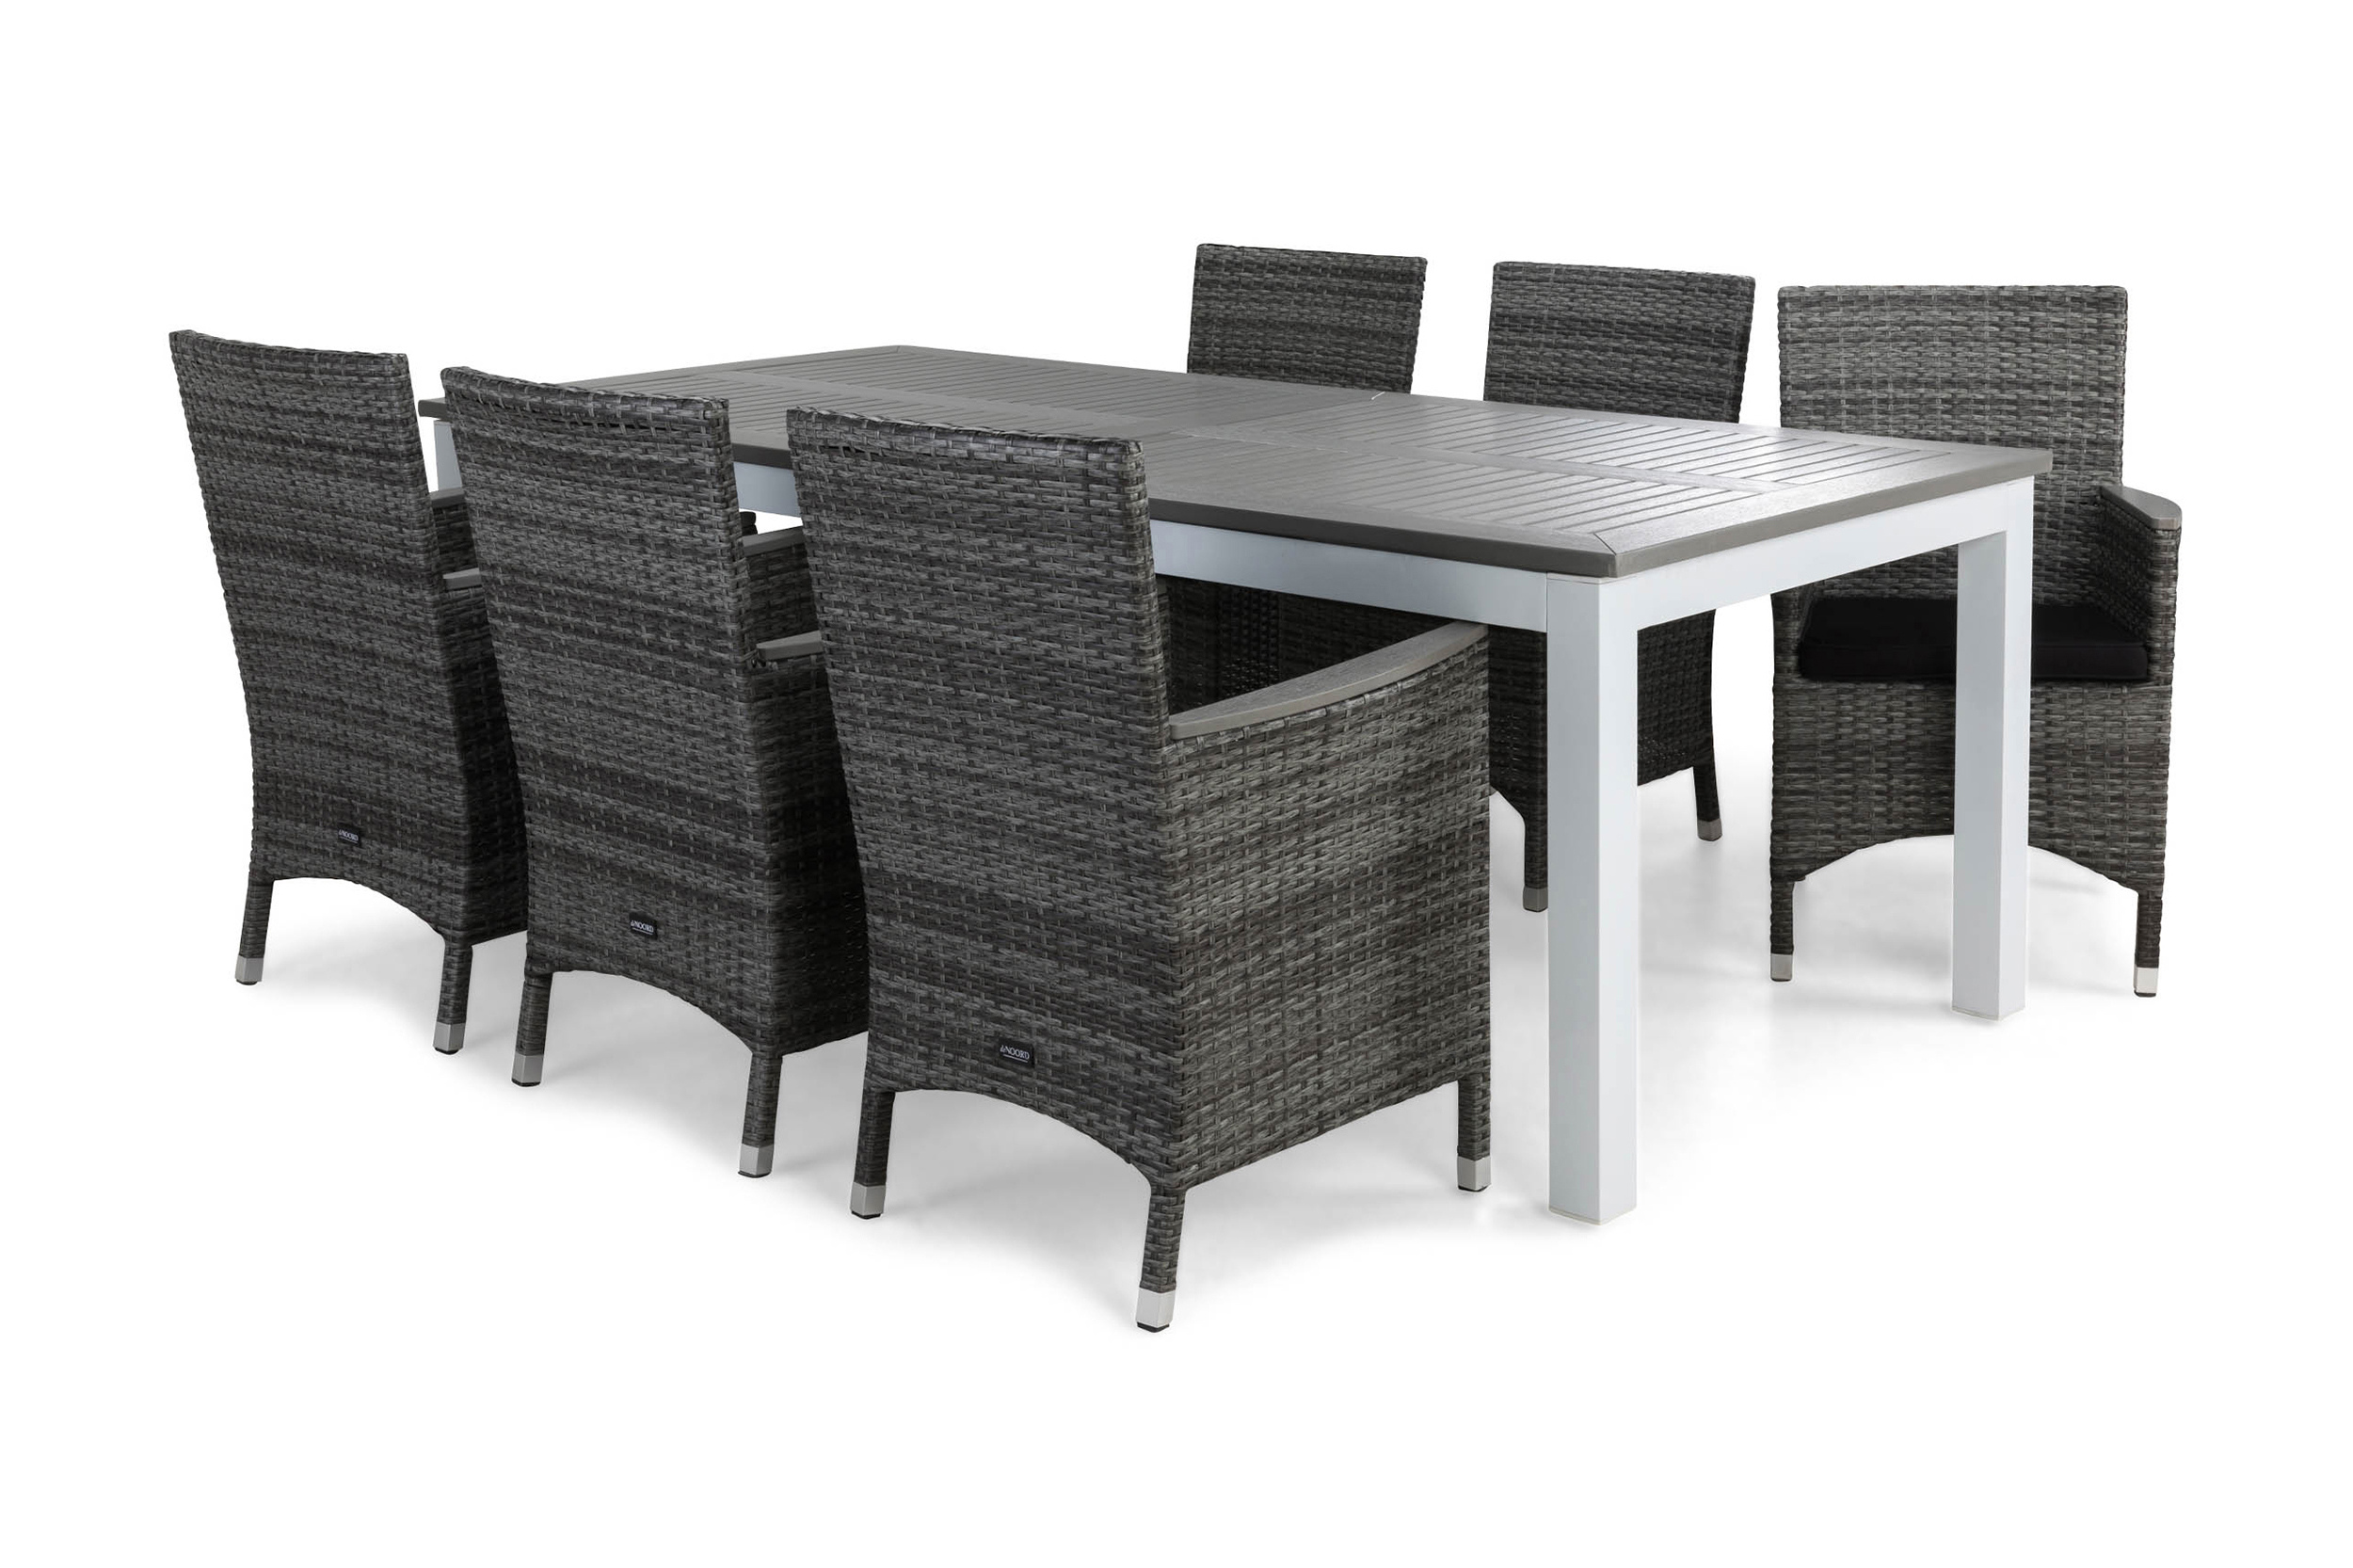 Ruokailuryhmä Monaco 220-280 cm 6 Thor Lyx tuolia Pehmusteet - Valkoinen/Harmaa/Aintwood/Musta